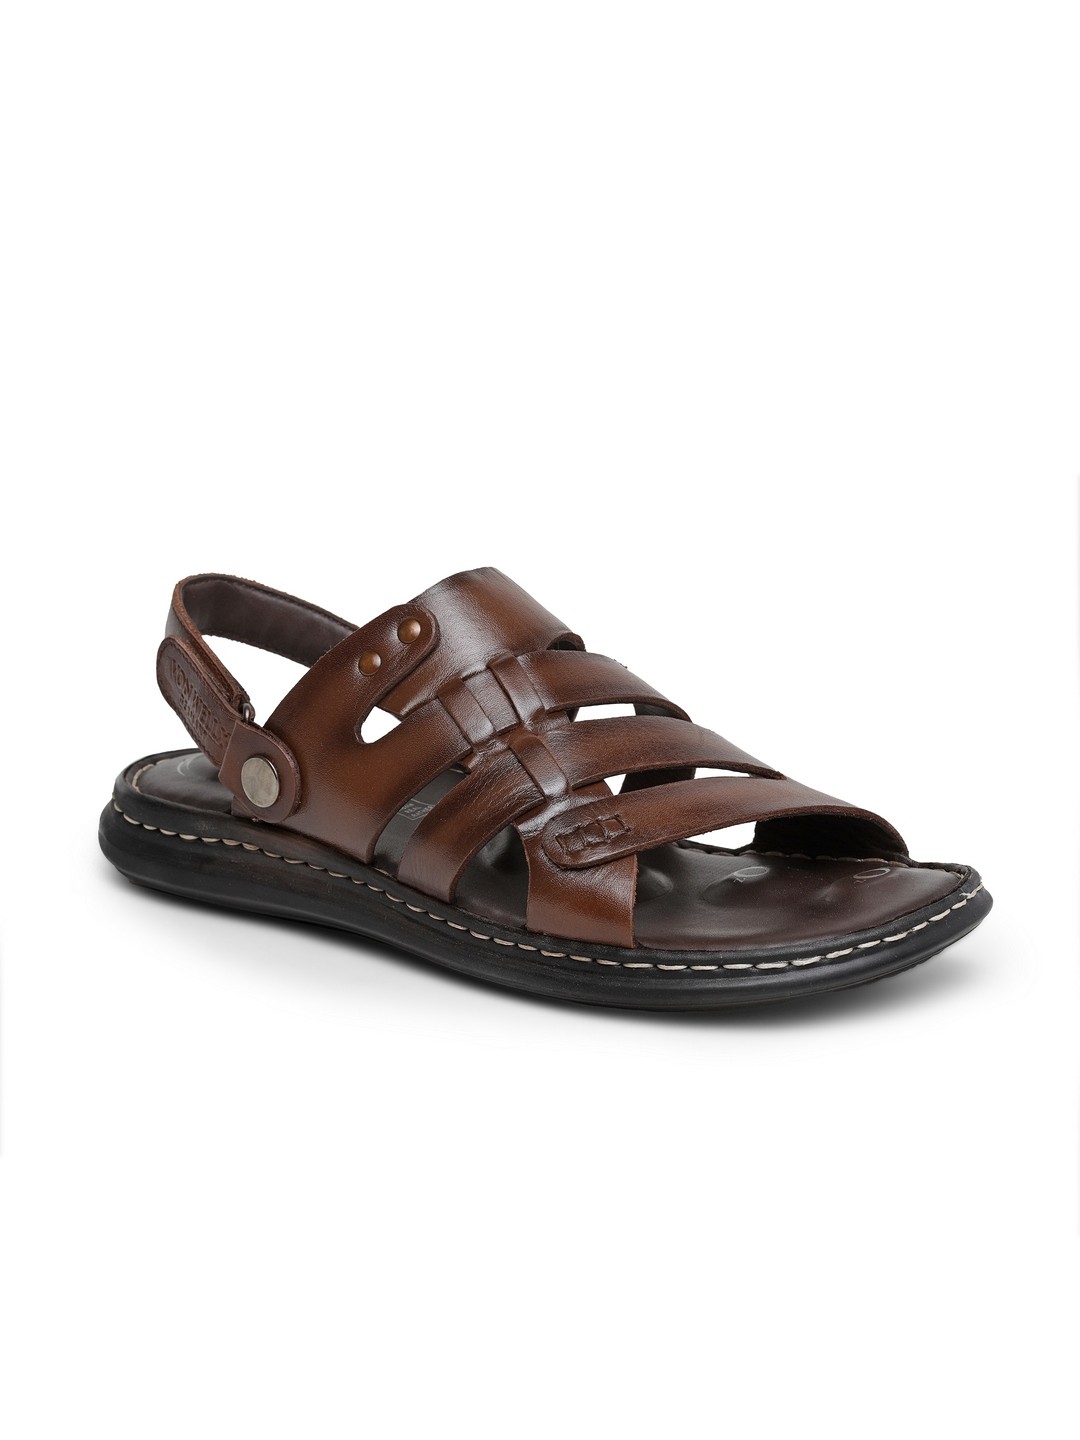 Buy VON WELLX GERMANY comfort men's brown sandal CALLAN In Delhi